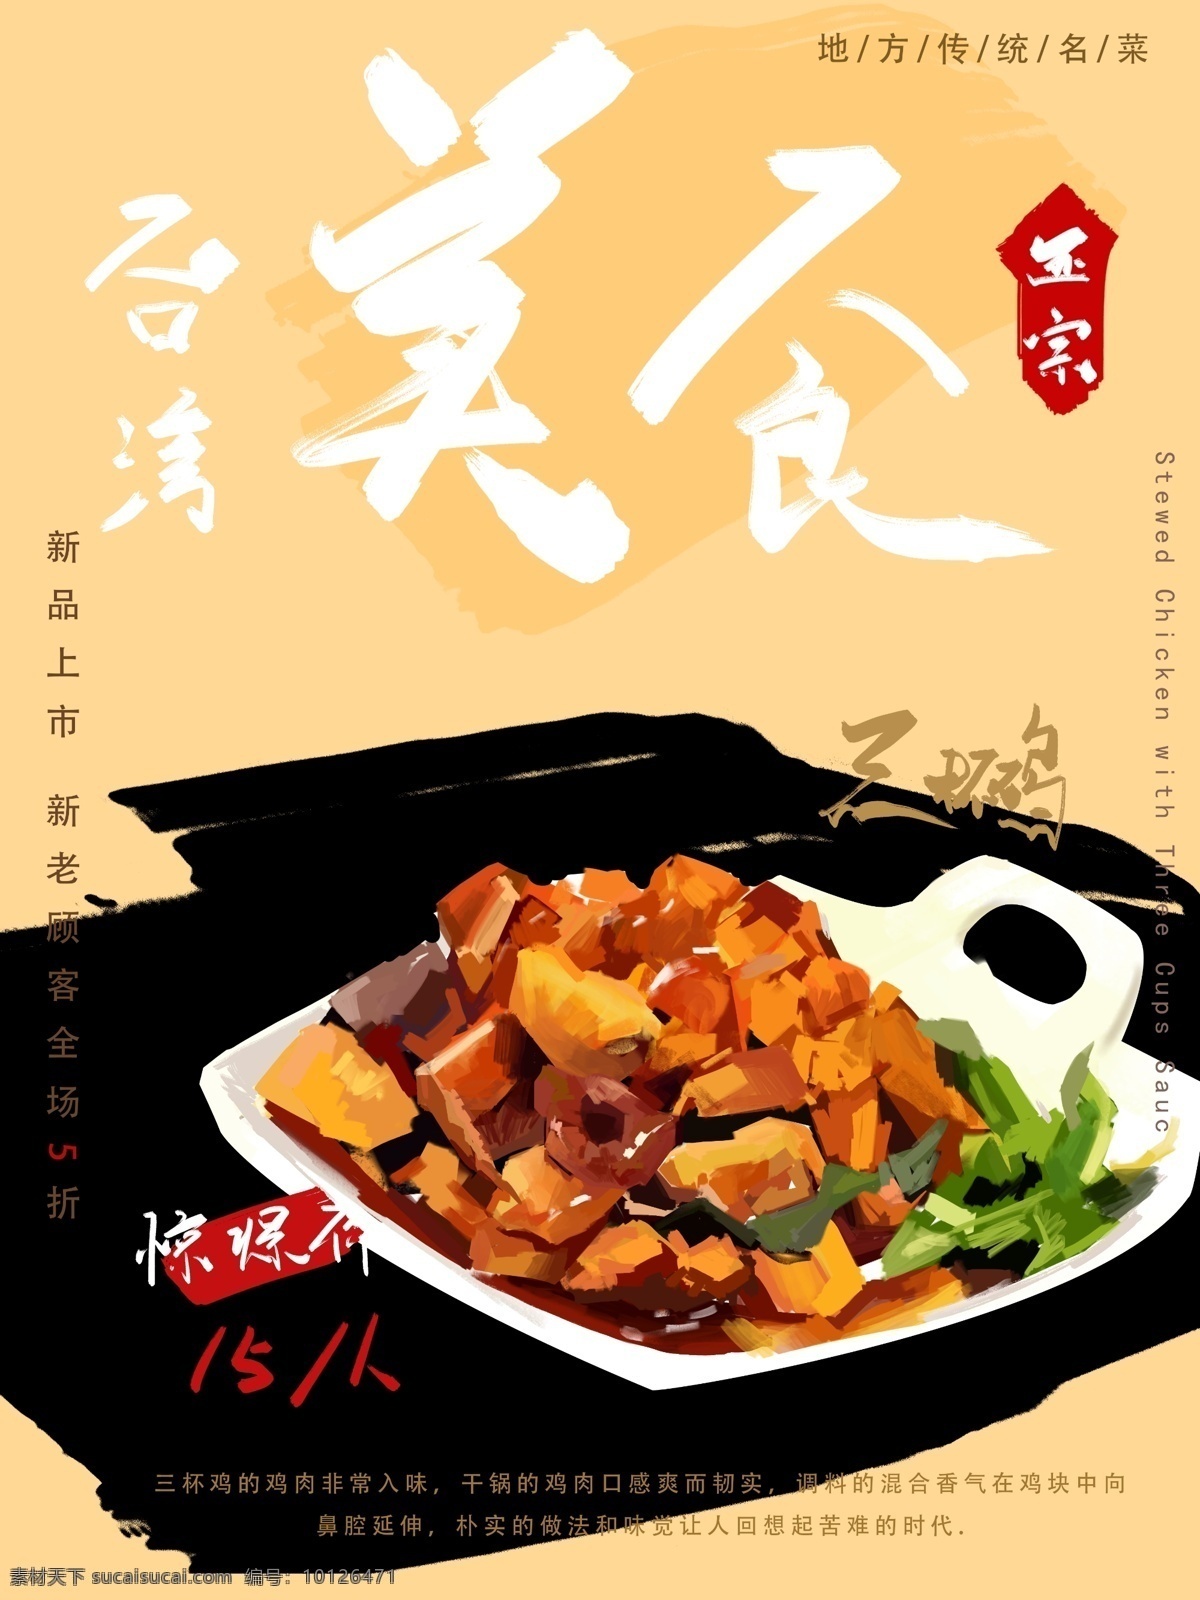 原创 手绘 台湾 美食 地方特色 新品 鸡肉 海报 宣传 朋友圈